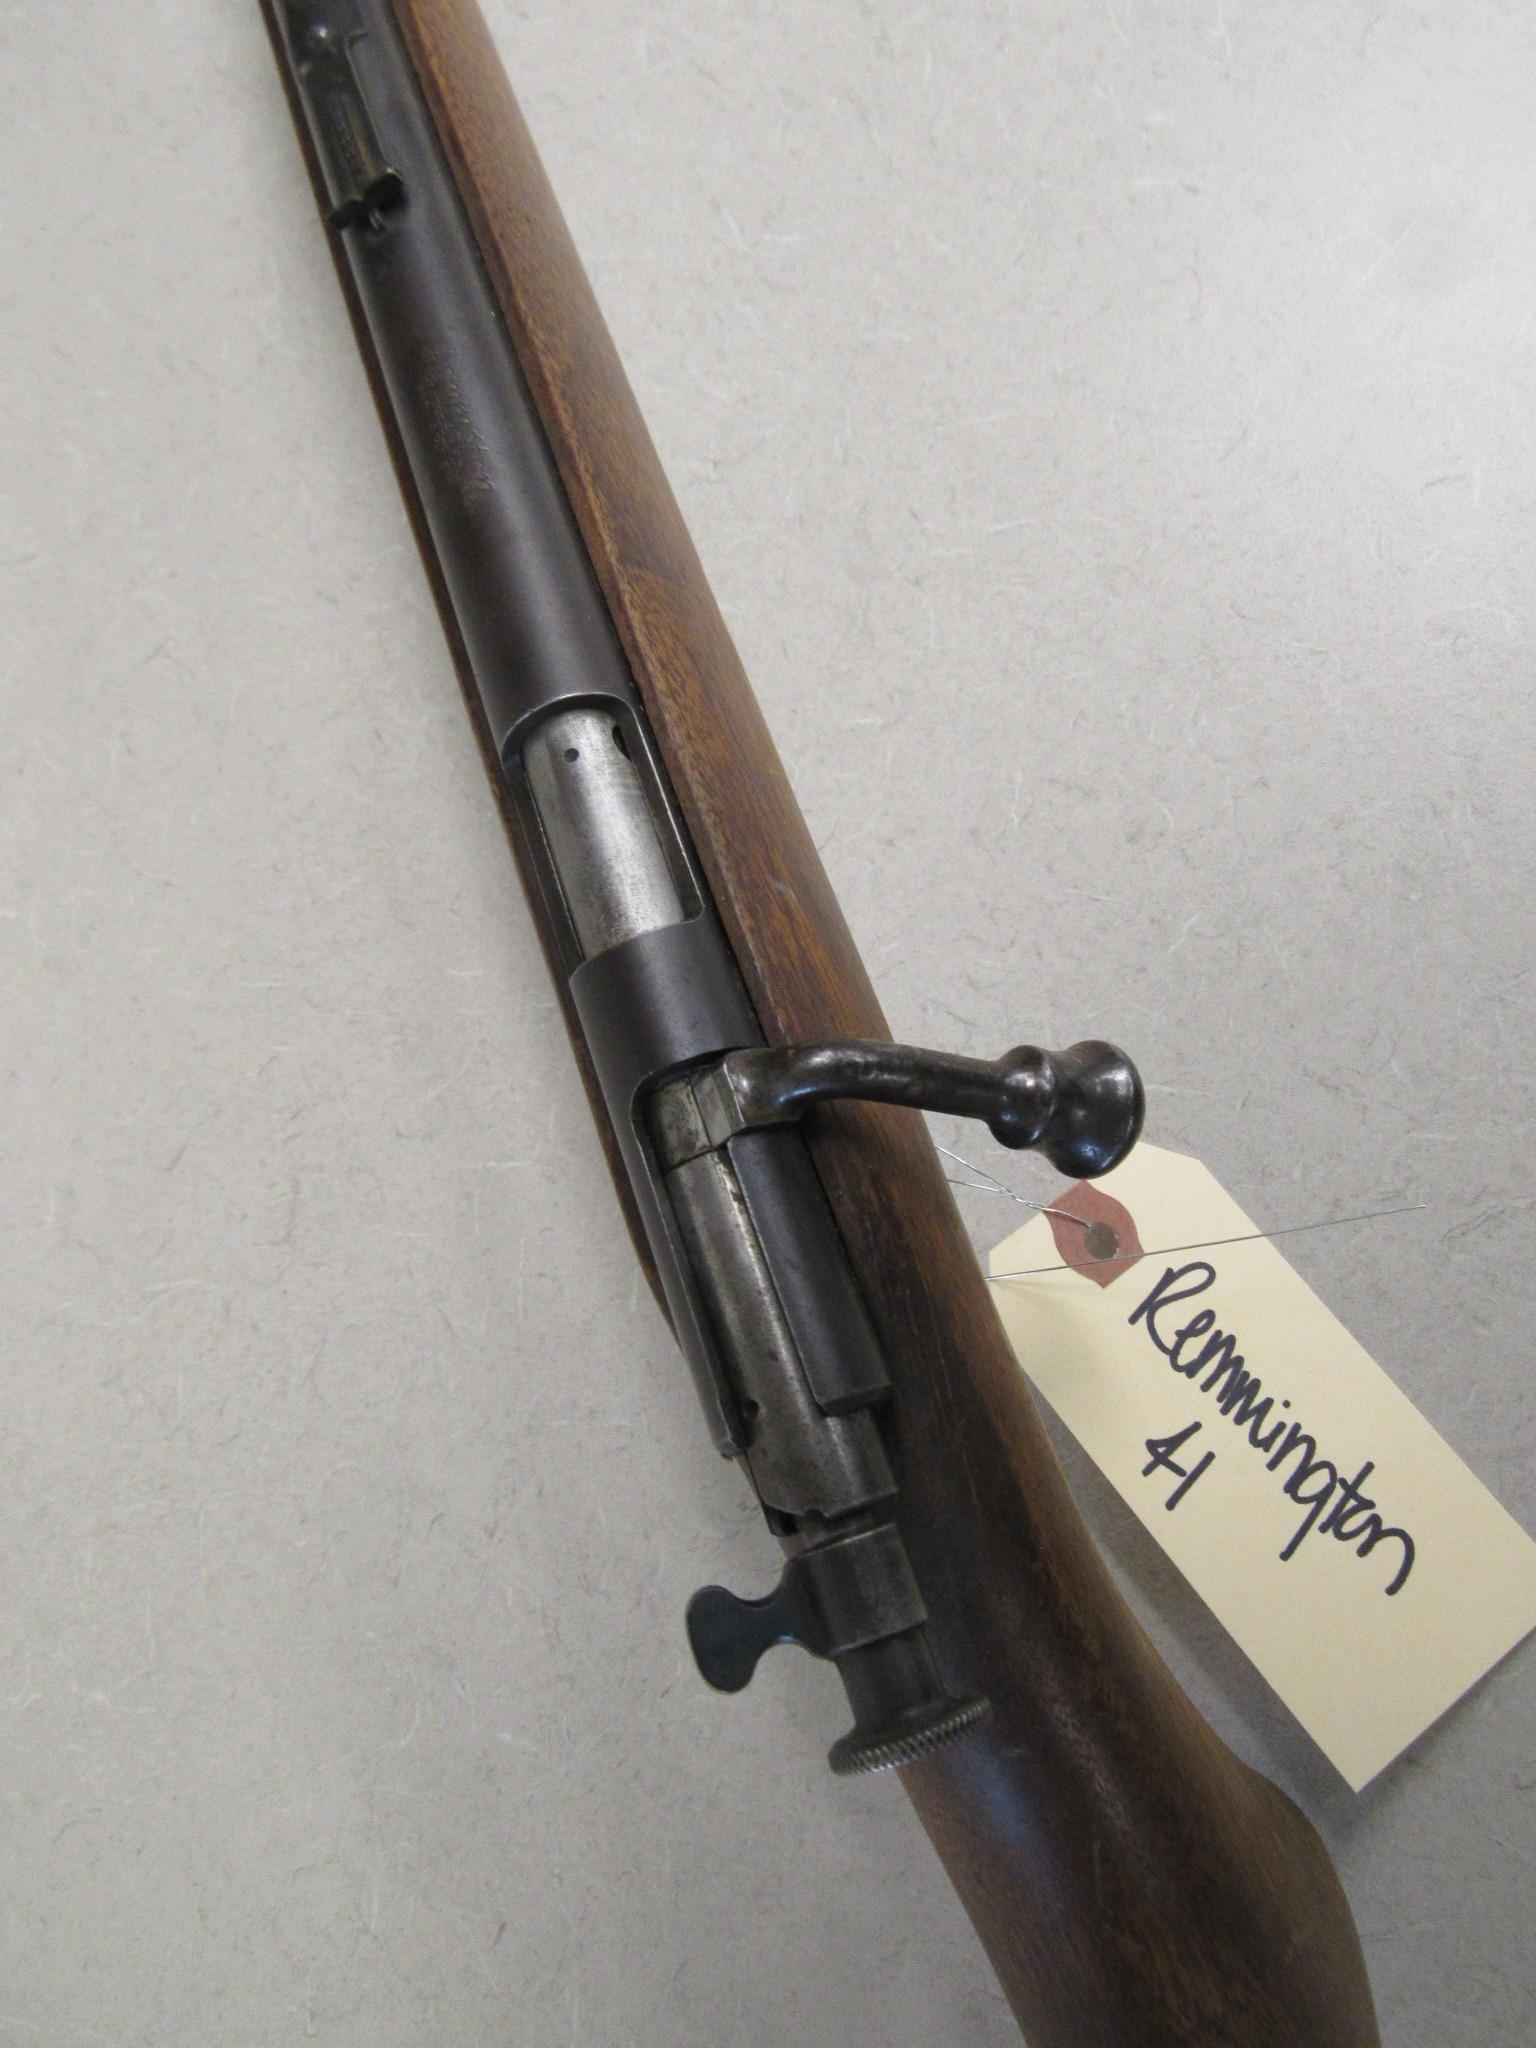 Remmington Model 41 .22 caliber rifle